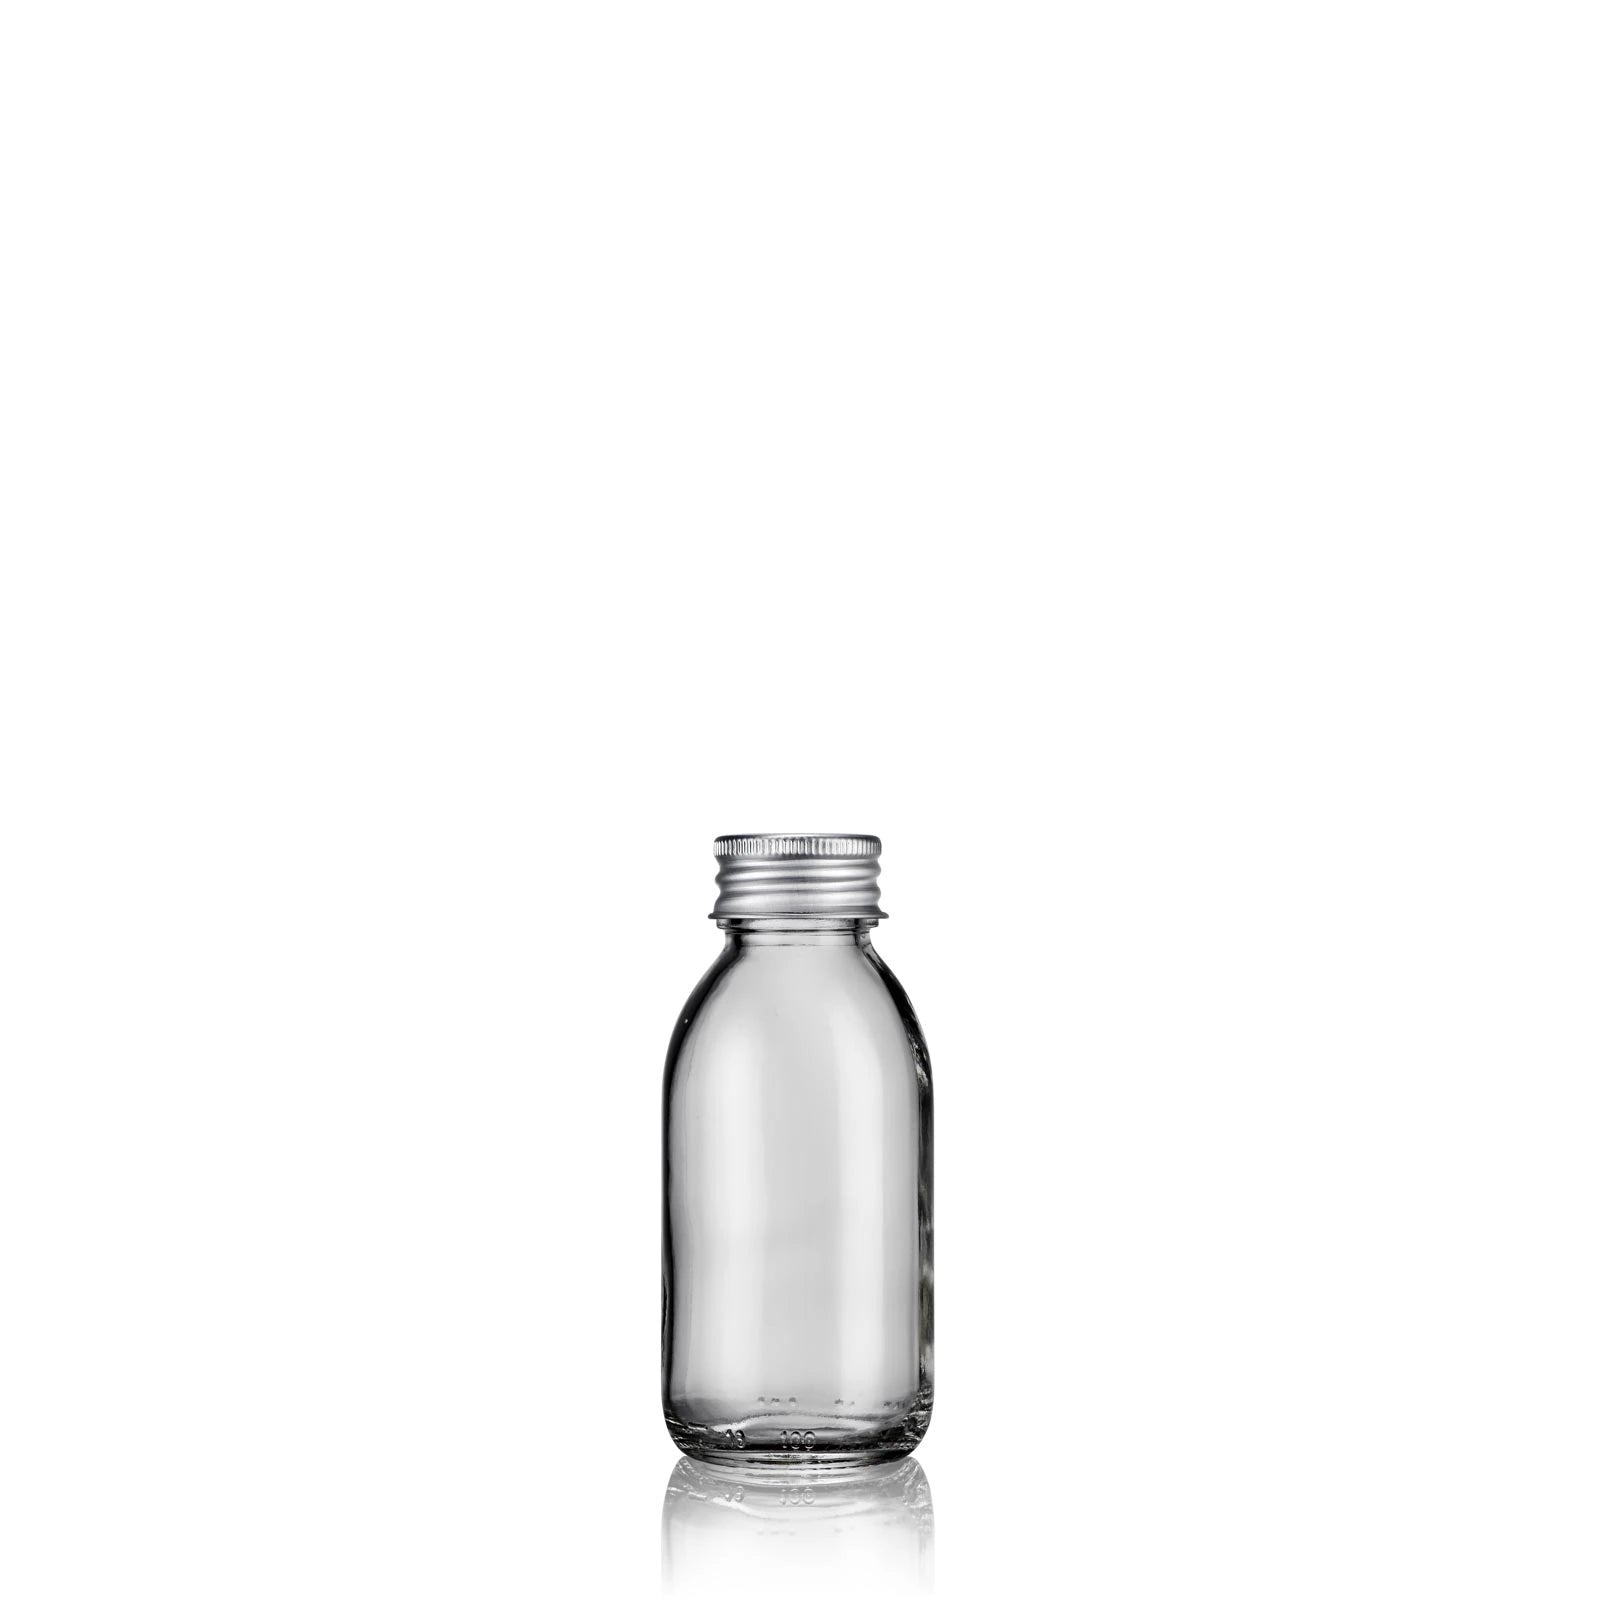 Flacon bouillotte verre transparent 15 ml avec bouchon blanc